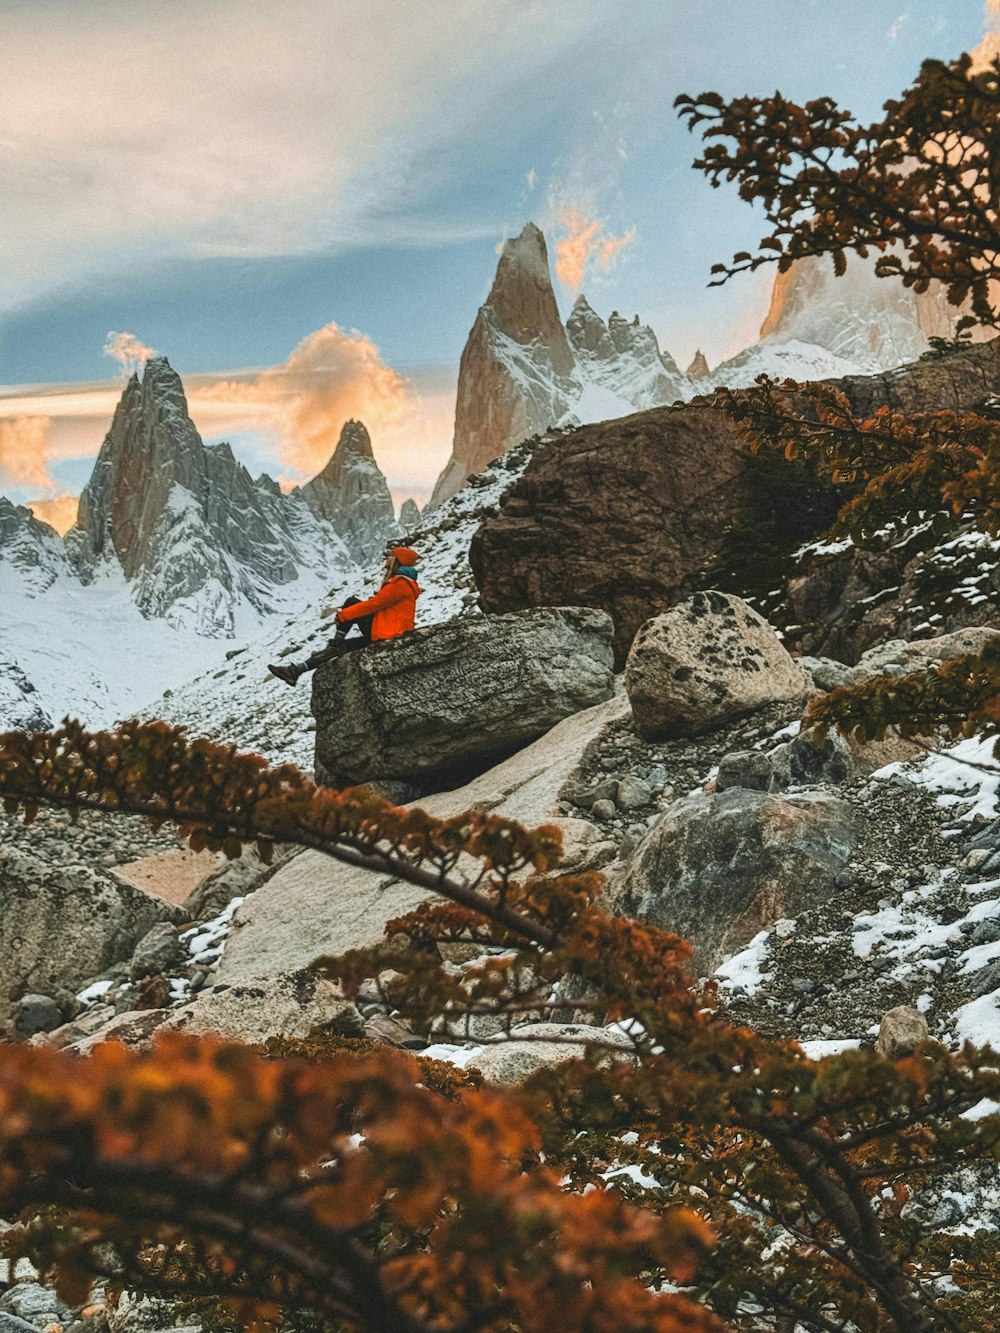 una persona seduta su una roccia in montagna